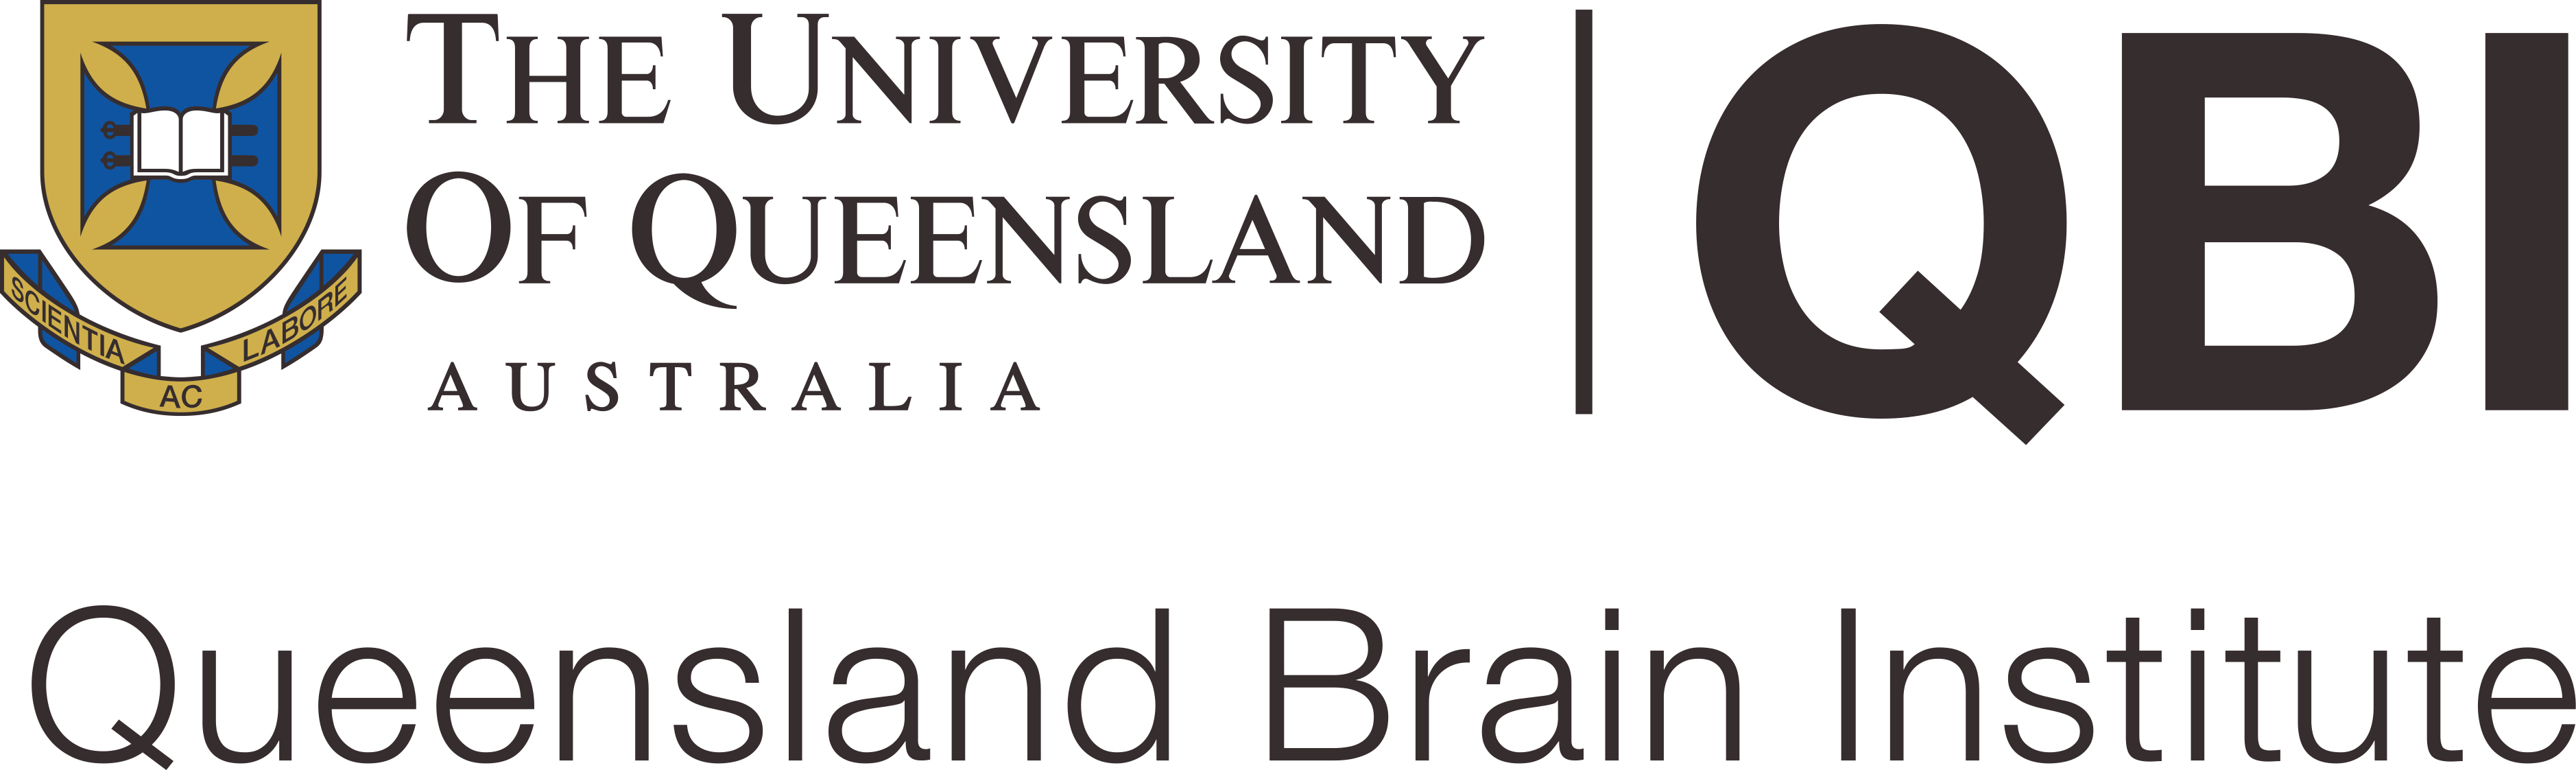 Queensland Brain Institute (QBI), University of Queensland